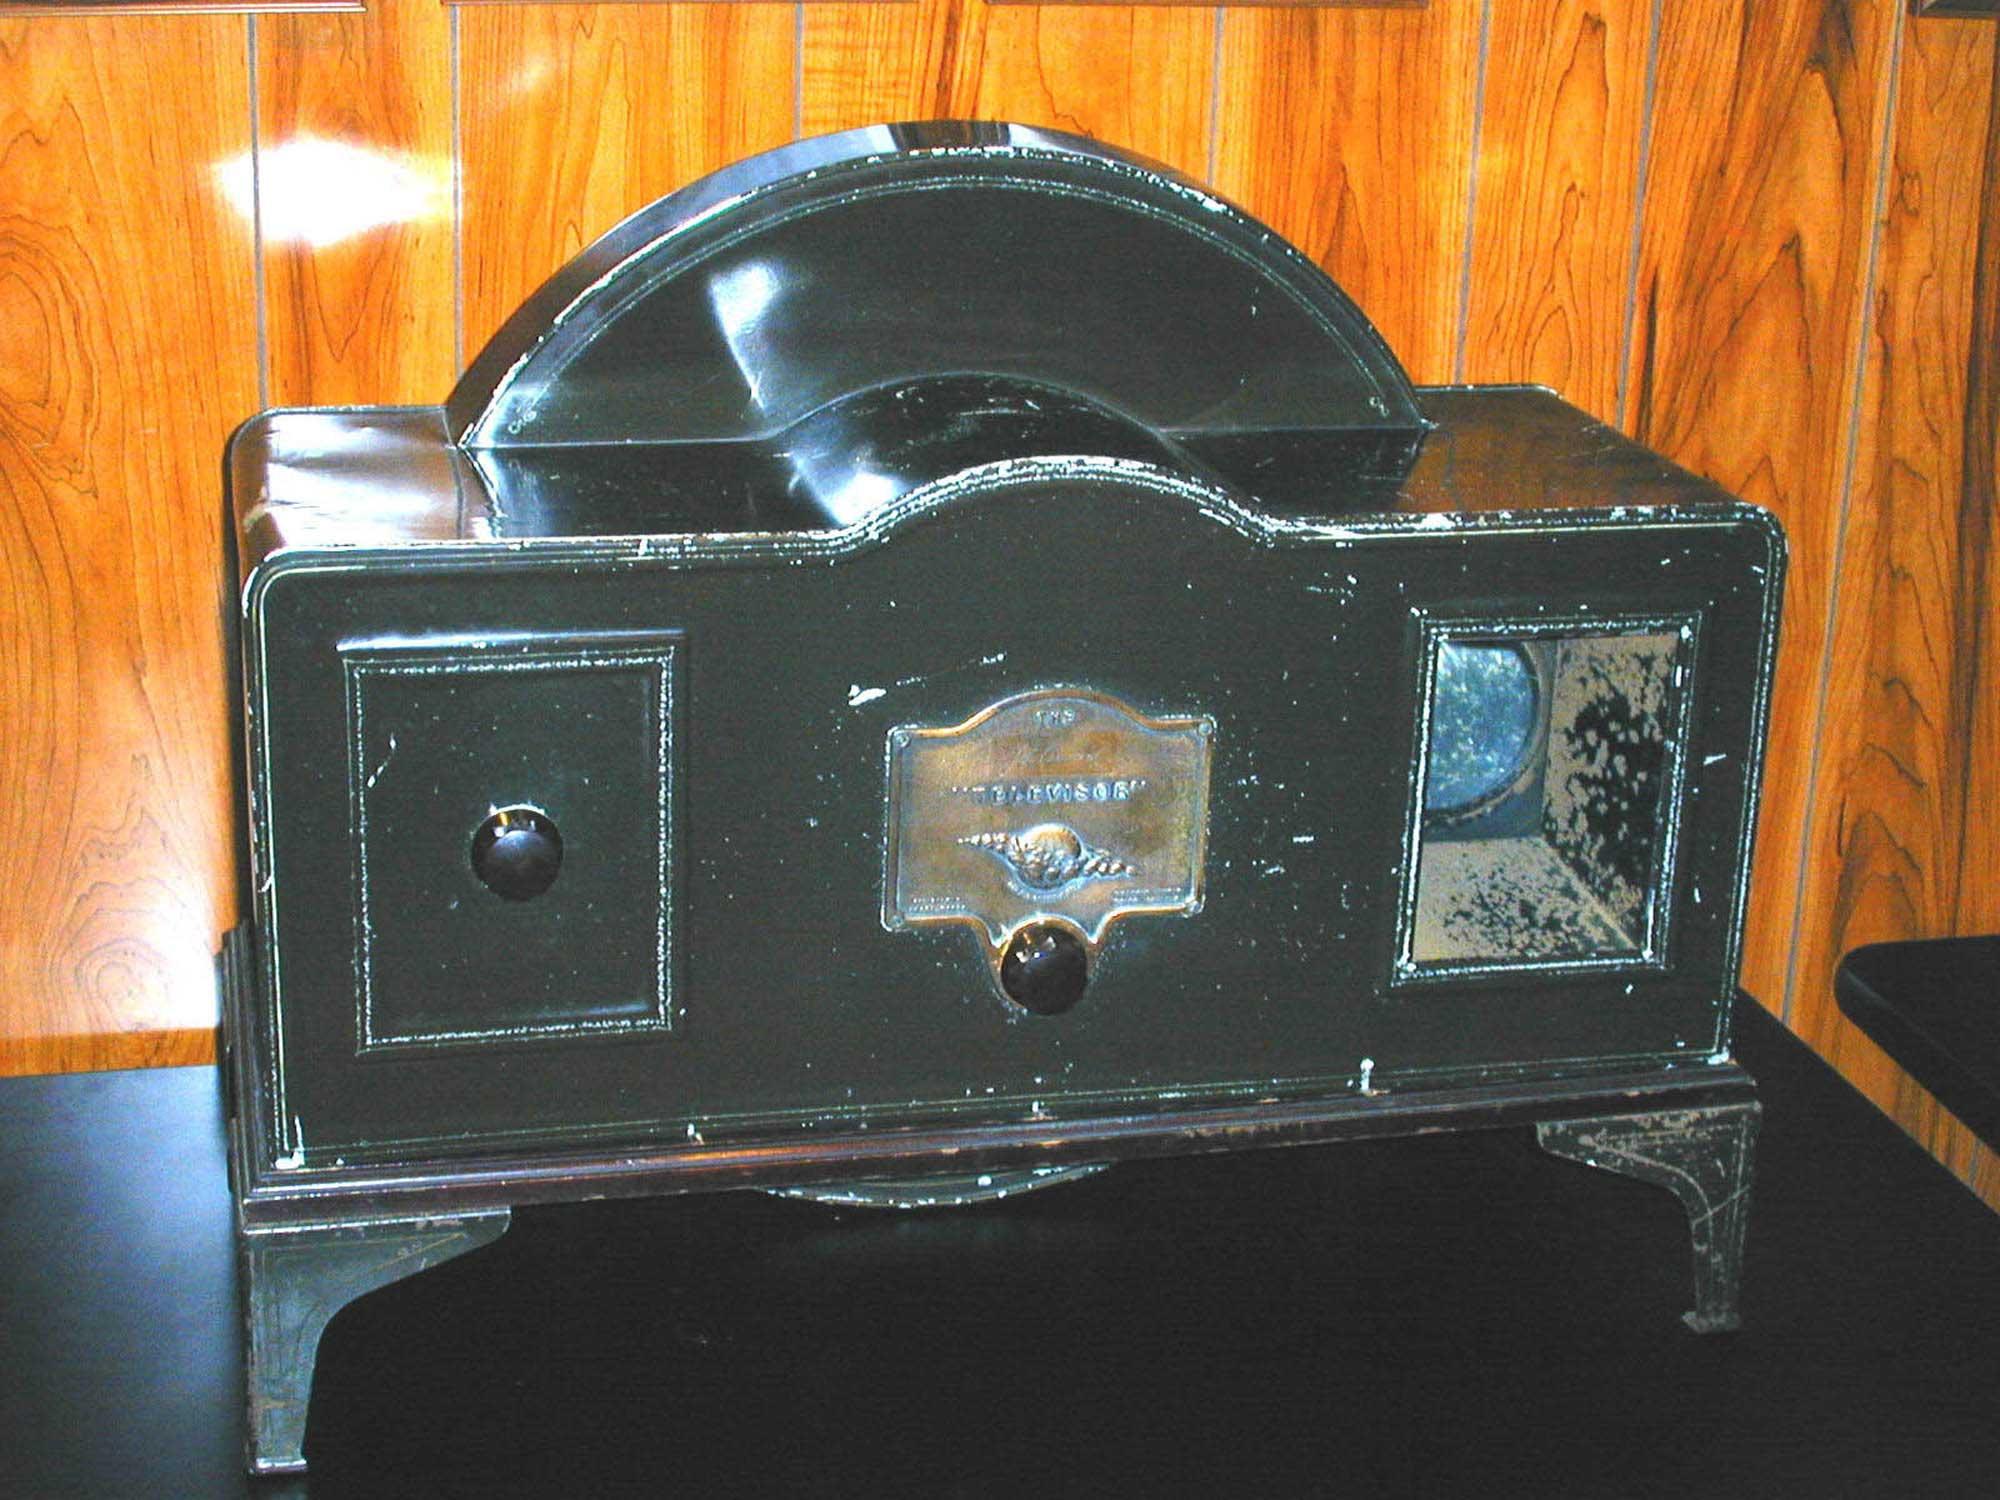 1929年的贝尔德televisor机械电视,当年售价29英镑,相当于一只煤气炉